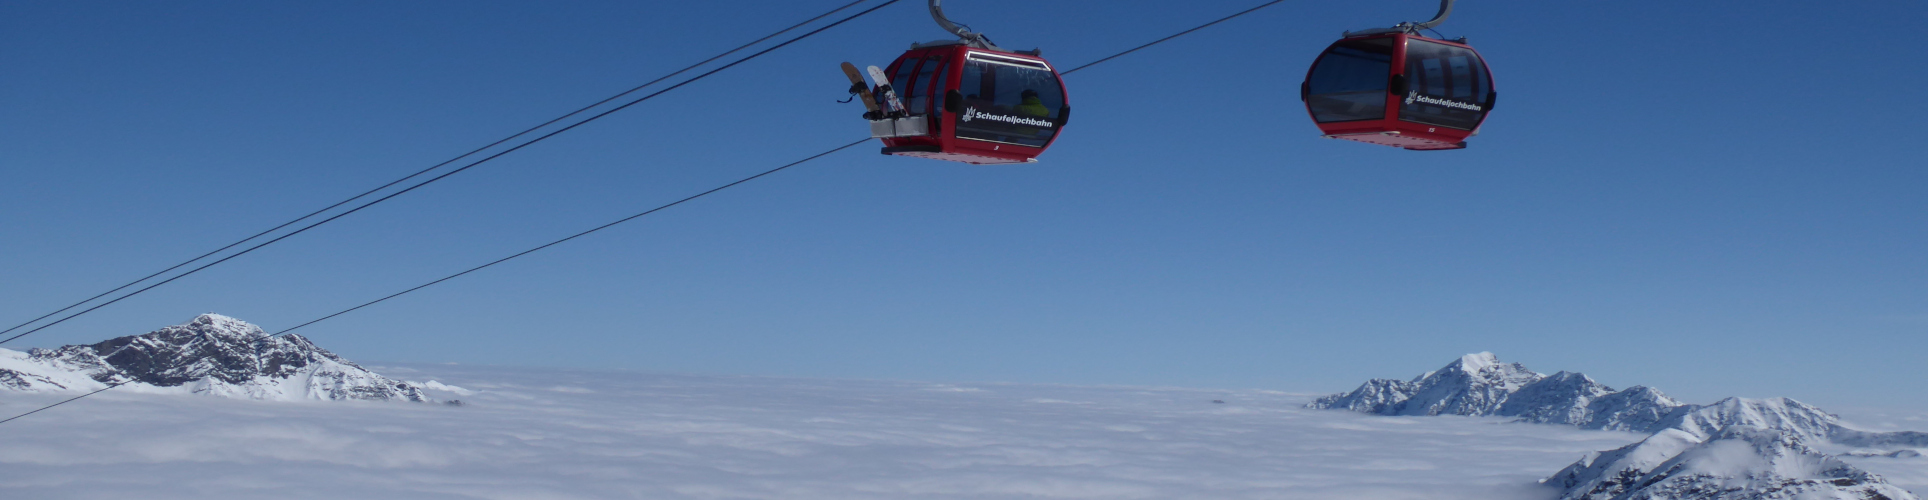 STUBAIER GLETSCHER – Skiwochenende – mit absoluter Schneegarantie – ab Freitag Nachmittag 